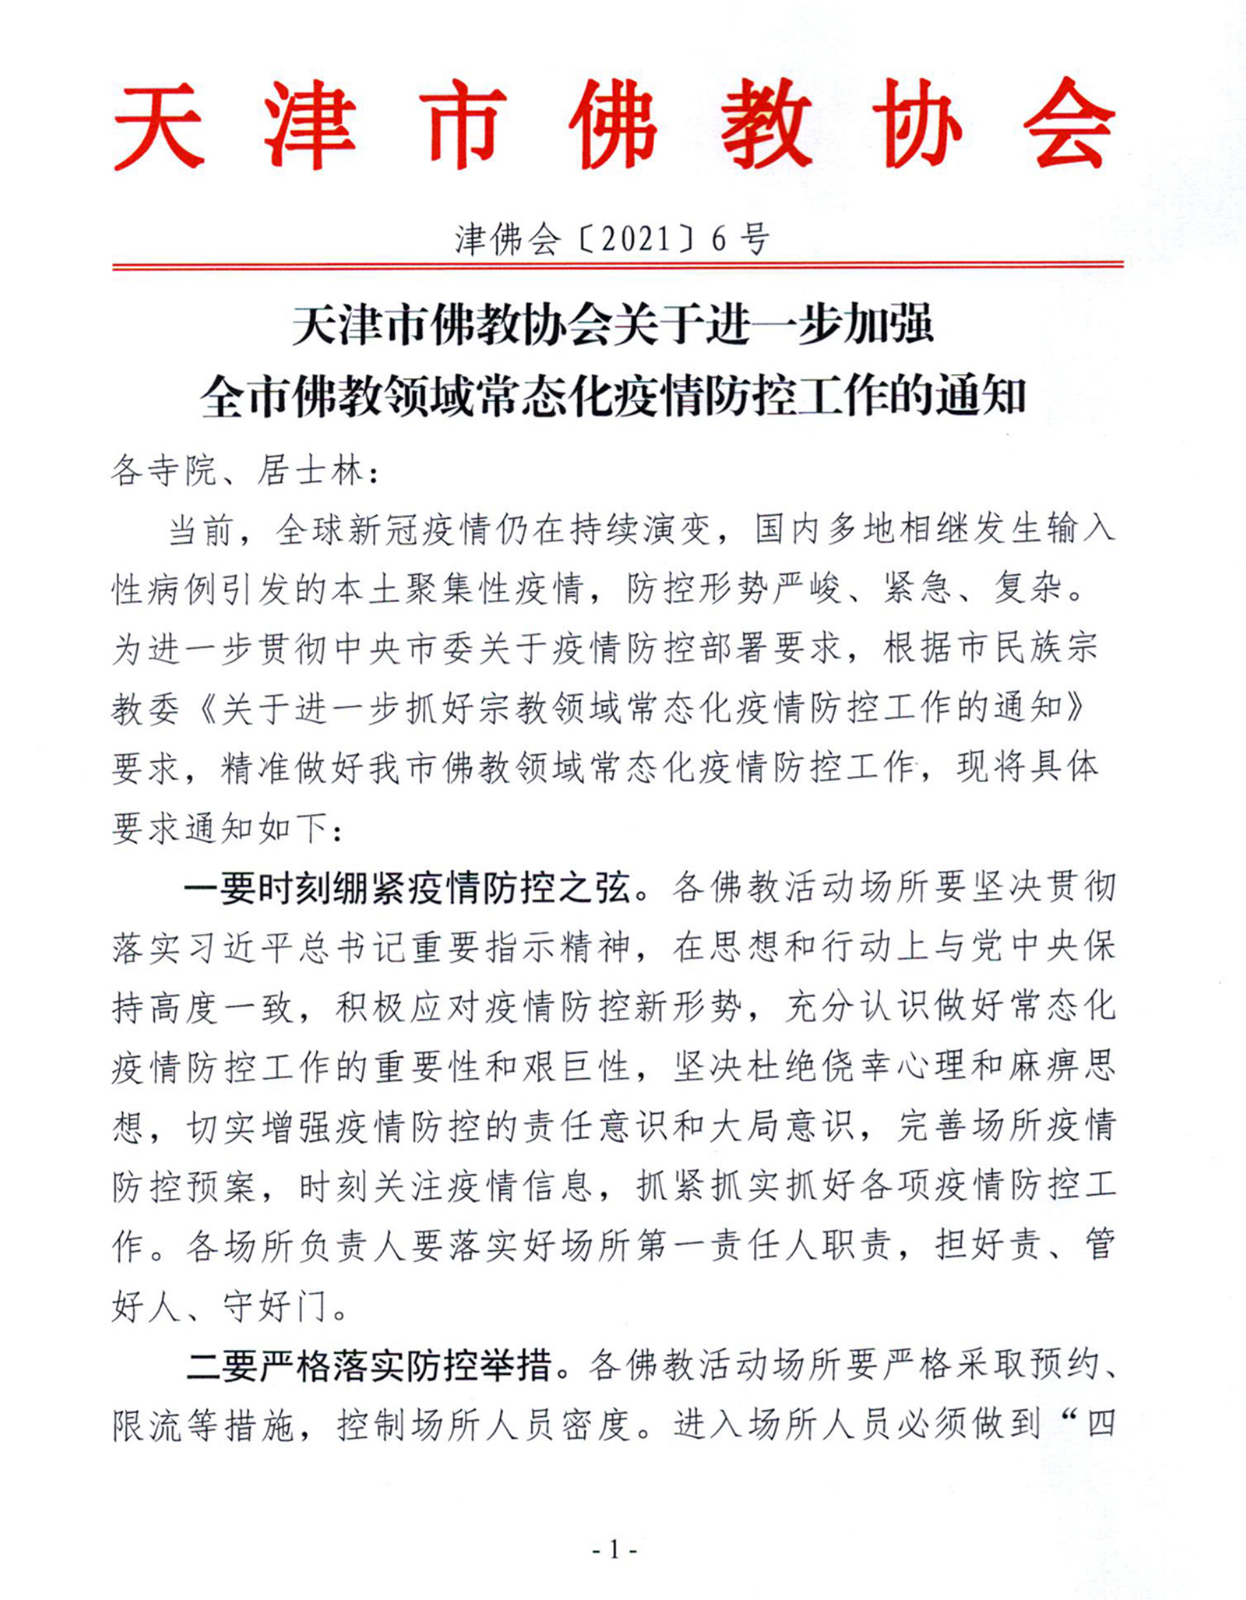 「佛教」天津市佛教协会进一步加强常态化疫情防控工作